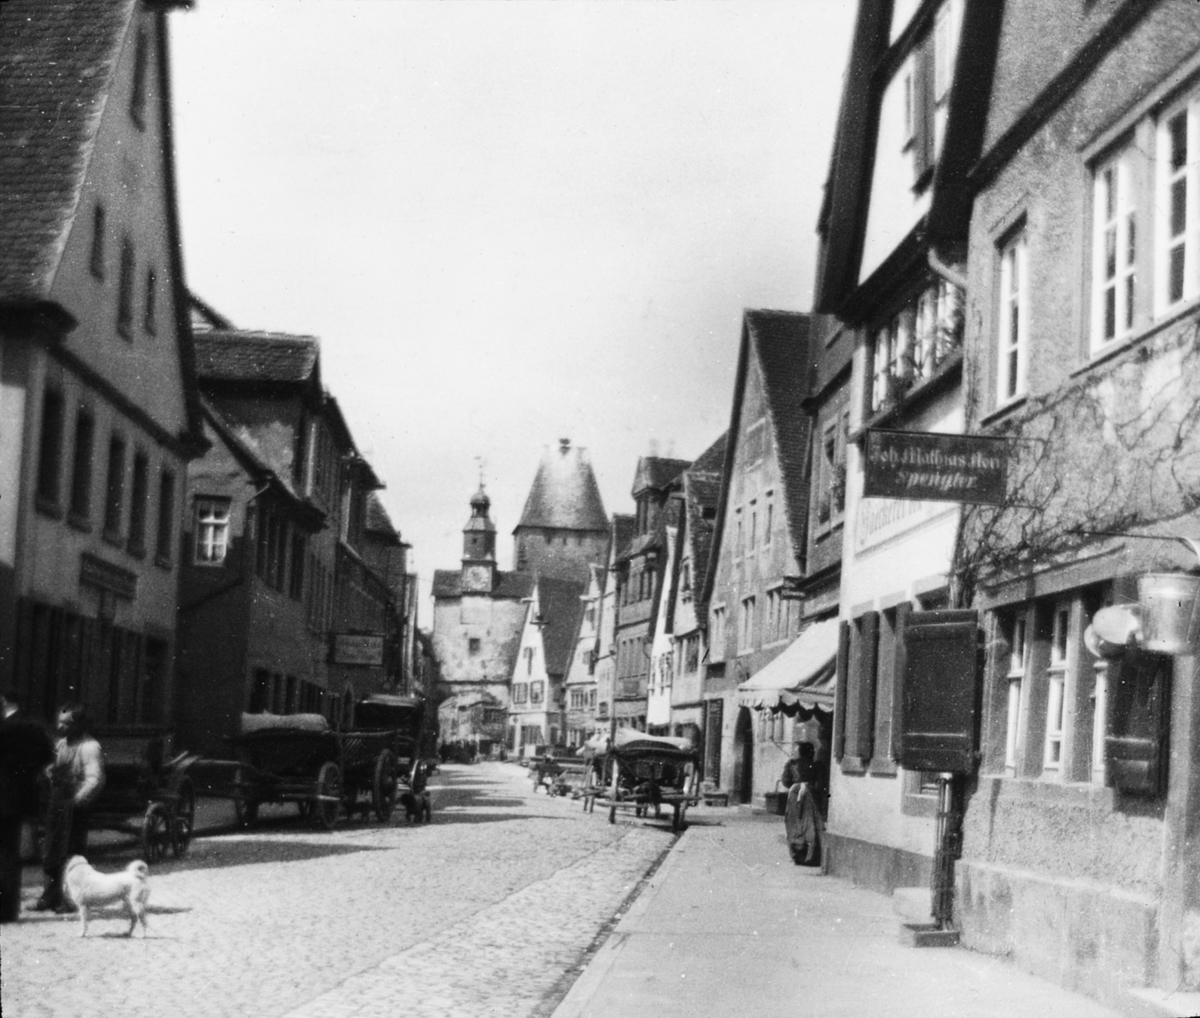 Skioptikonbild med motiv från Rothenburg.
Bilden har förvarats i kartong märkt: Rothenburg I. 1901